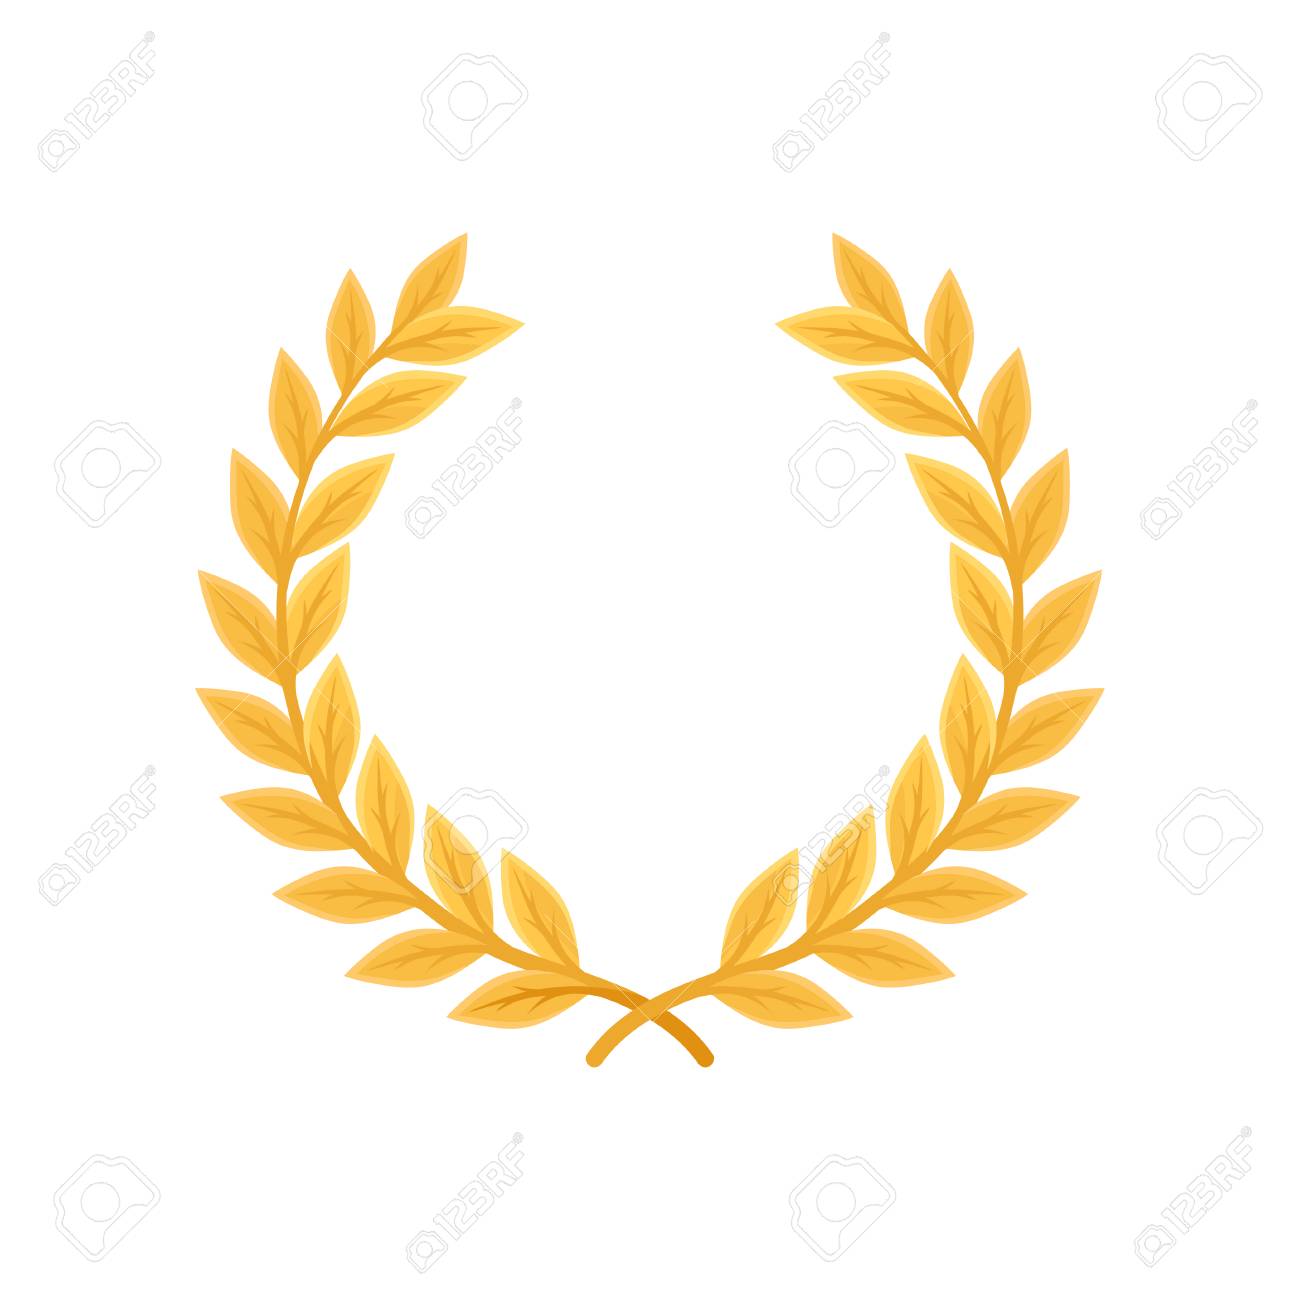 Gold Laurel Wreath Heraldic Symbol Monarchy Attribute Vector